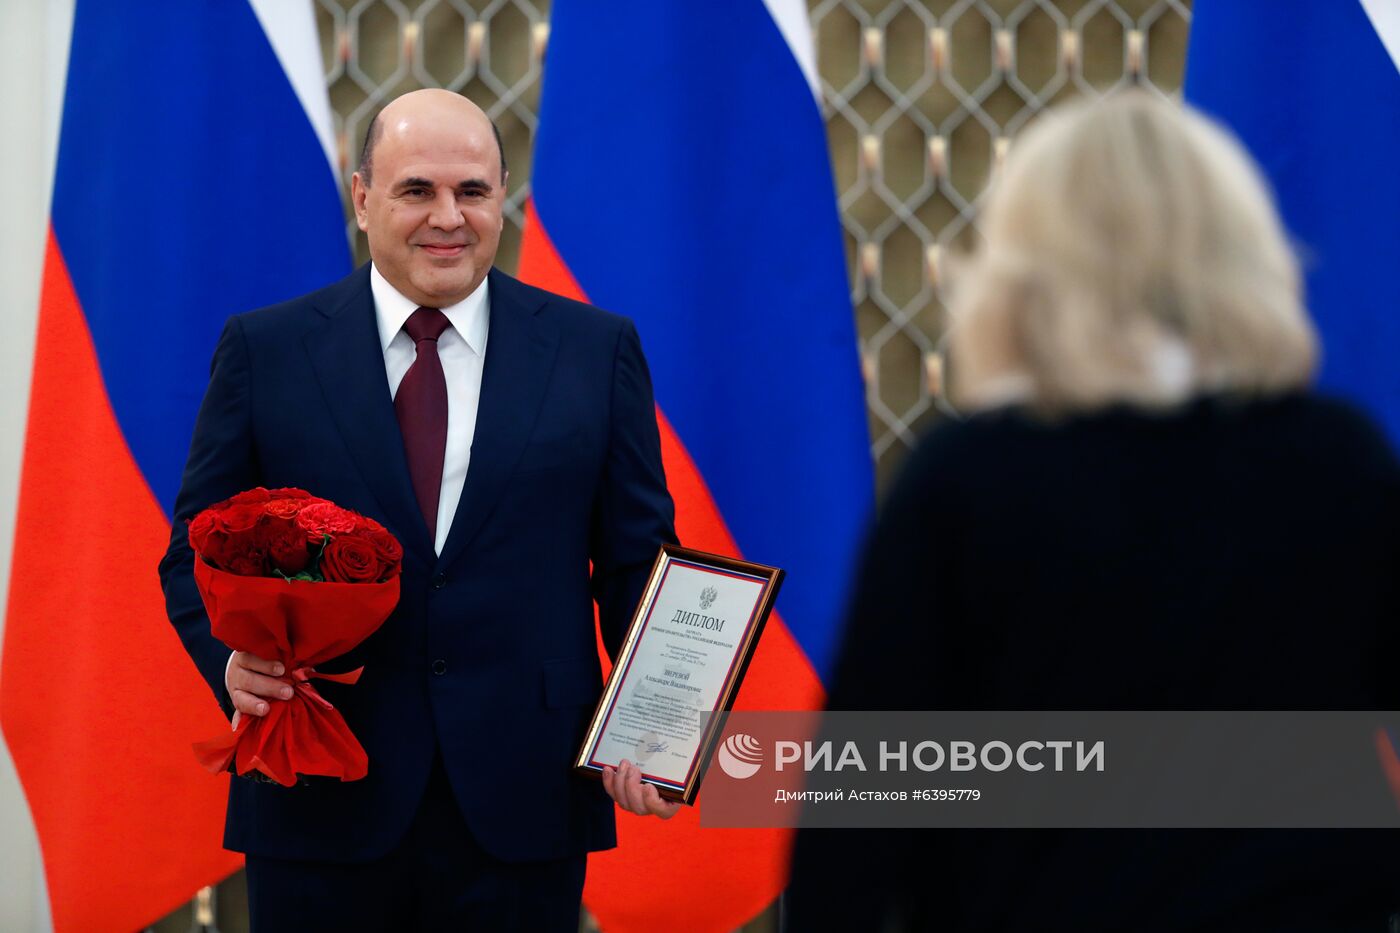 Премьер-министр РФ М. Мишустин вручил премии правительства РФ 2020 года в области науки и техники